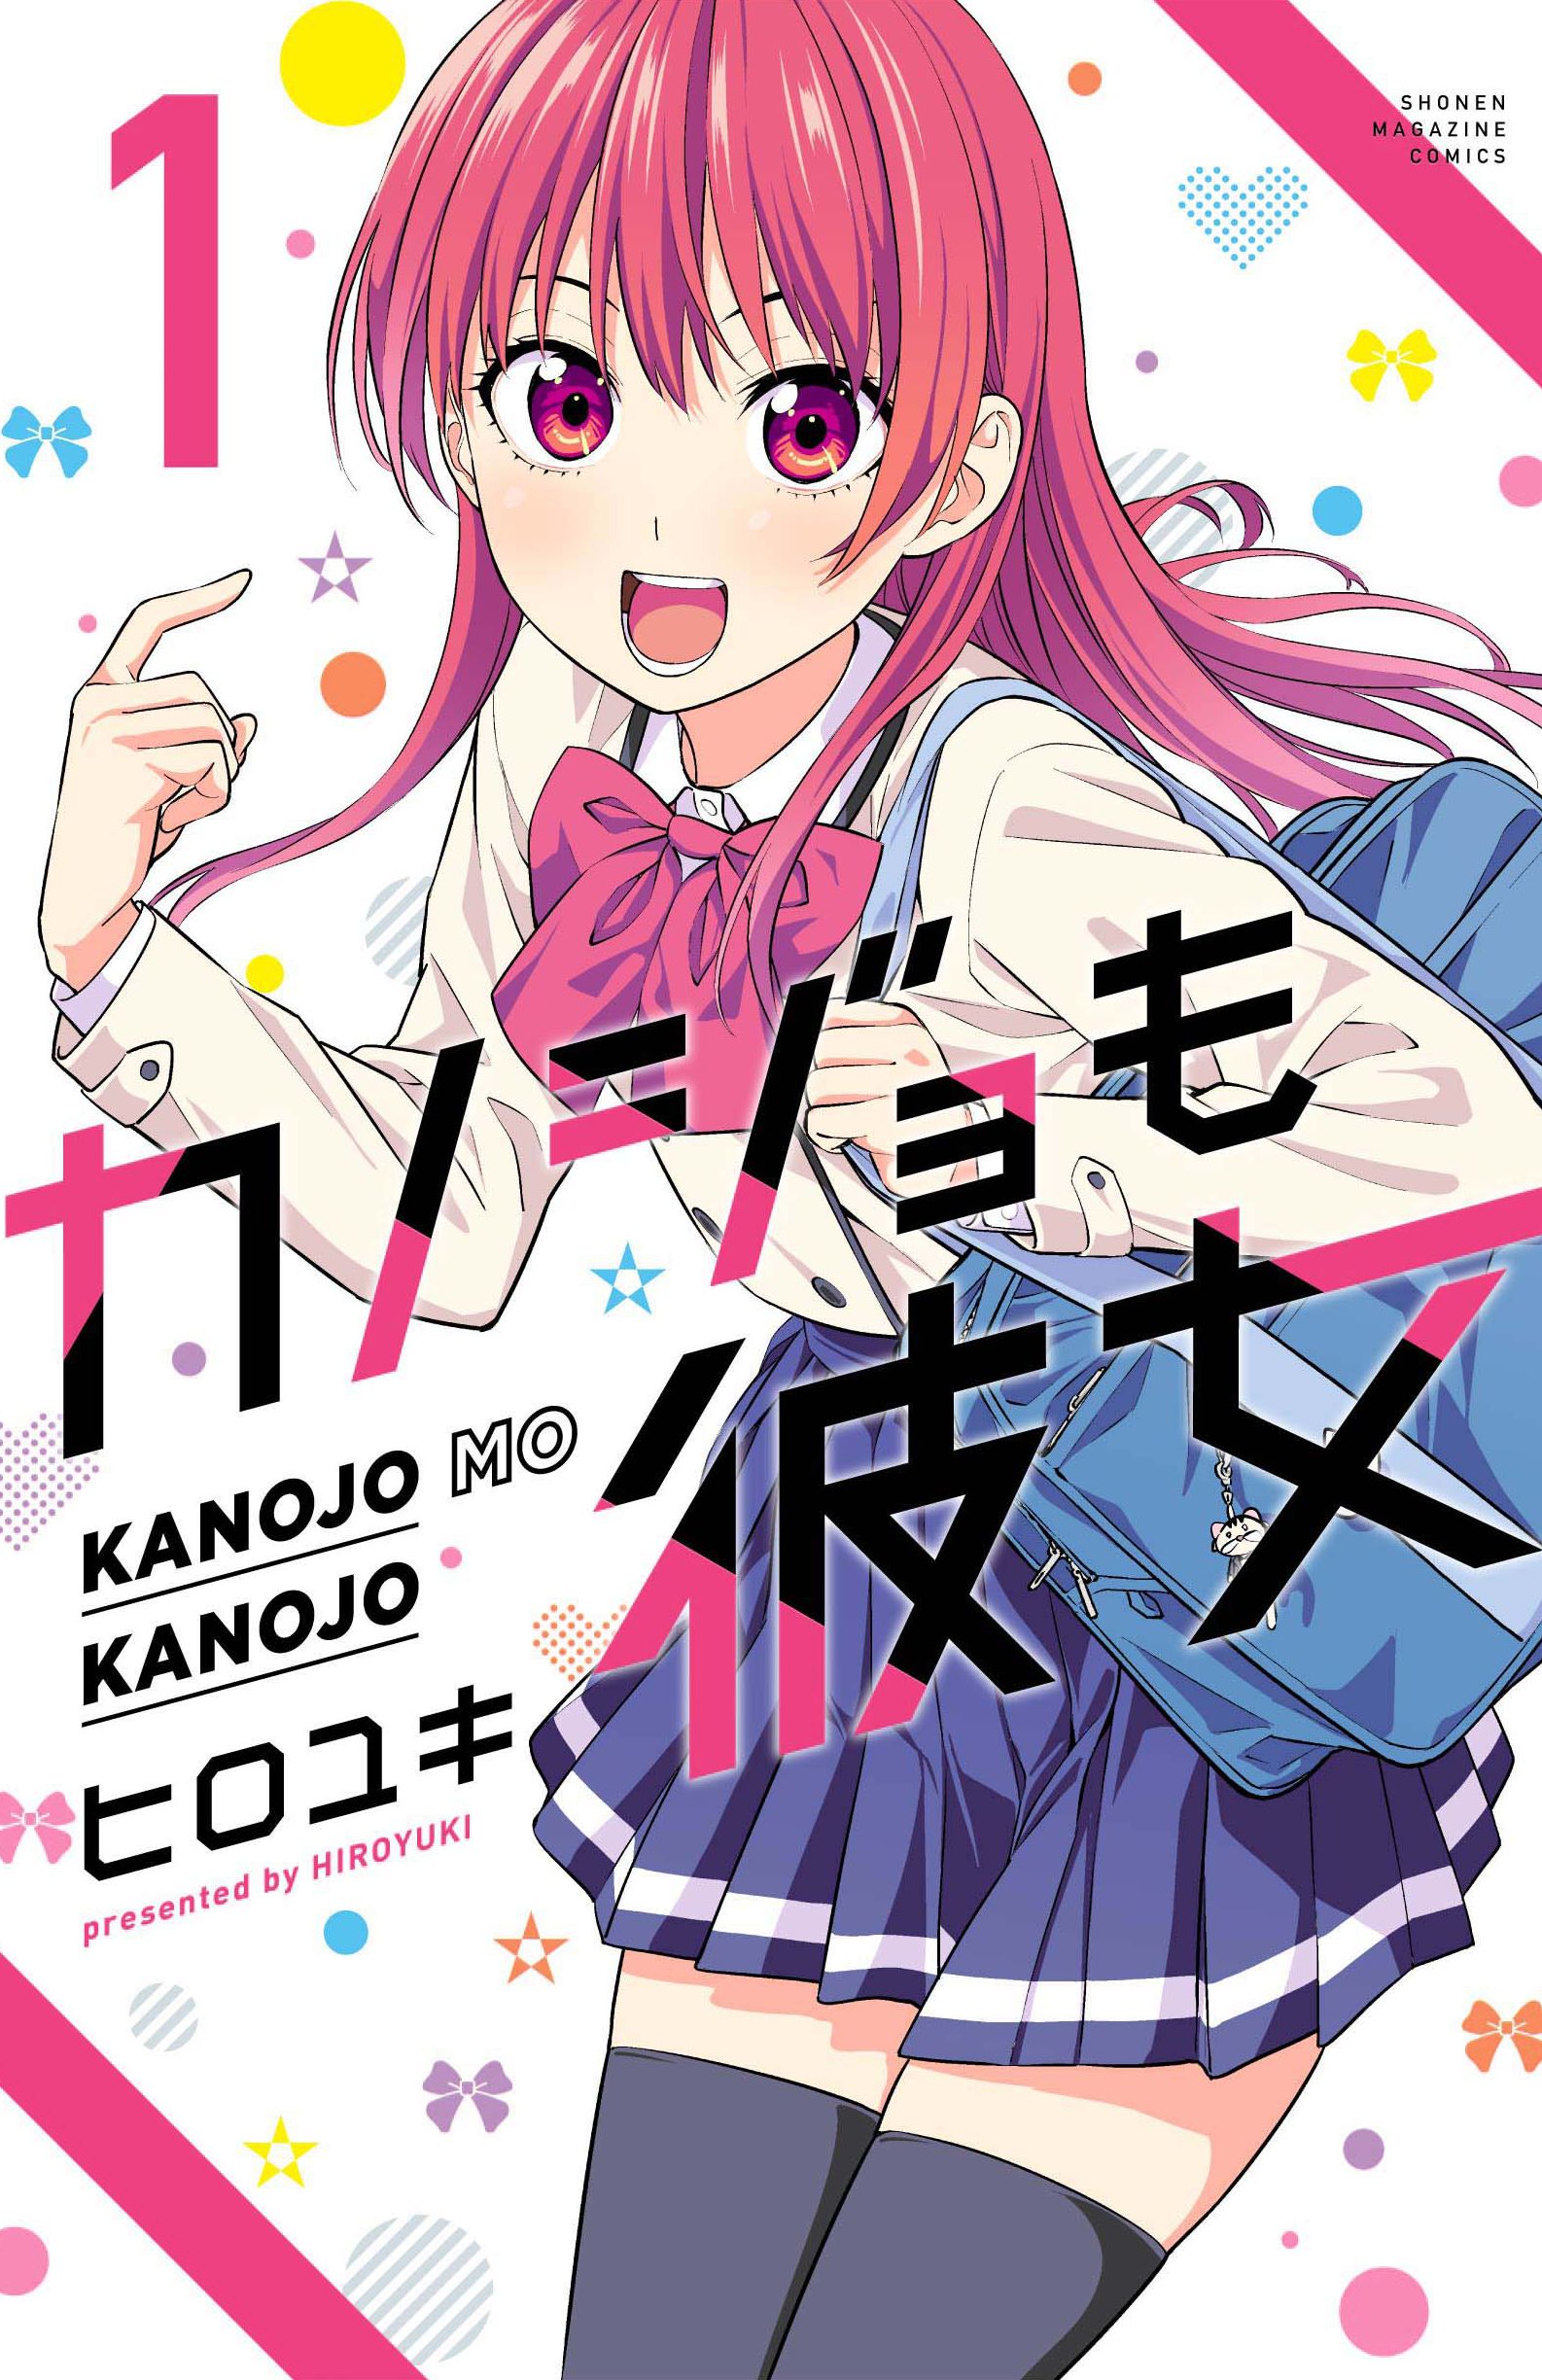 Kanojo mo Kanojo Anime Image Board